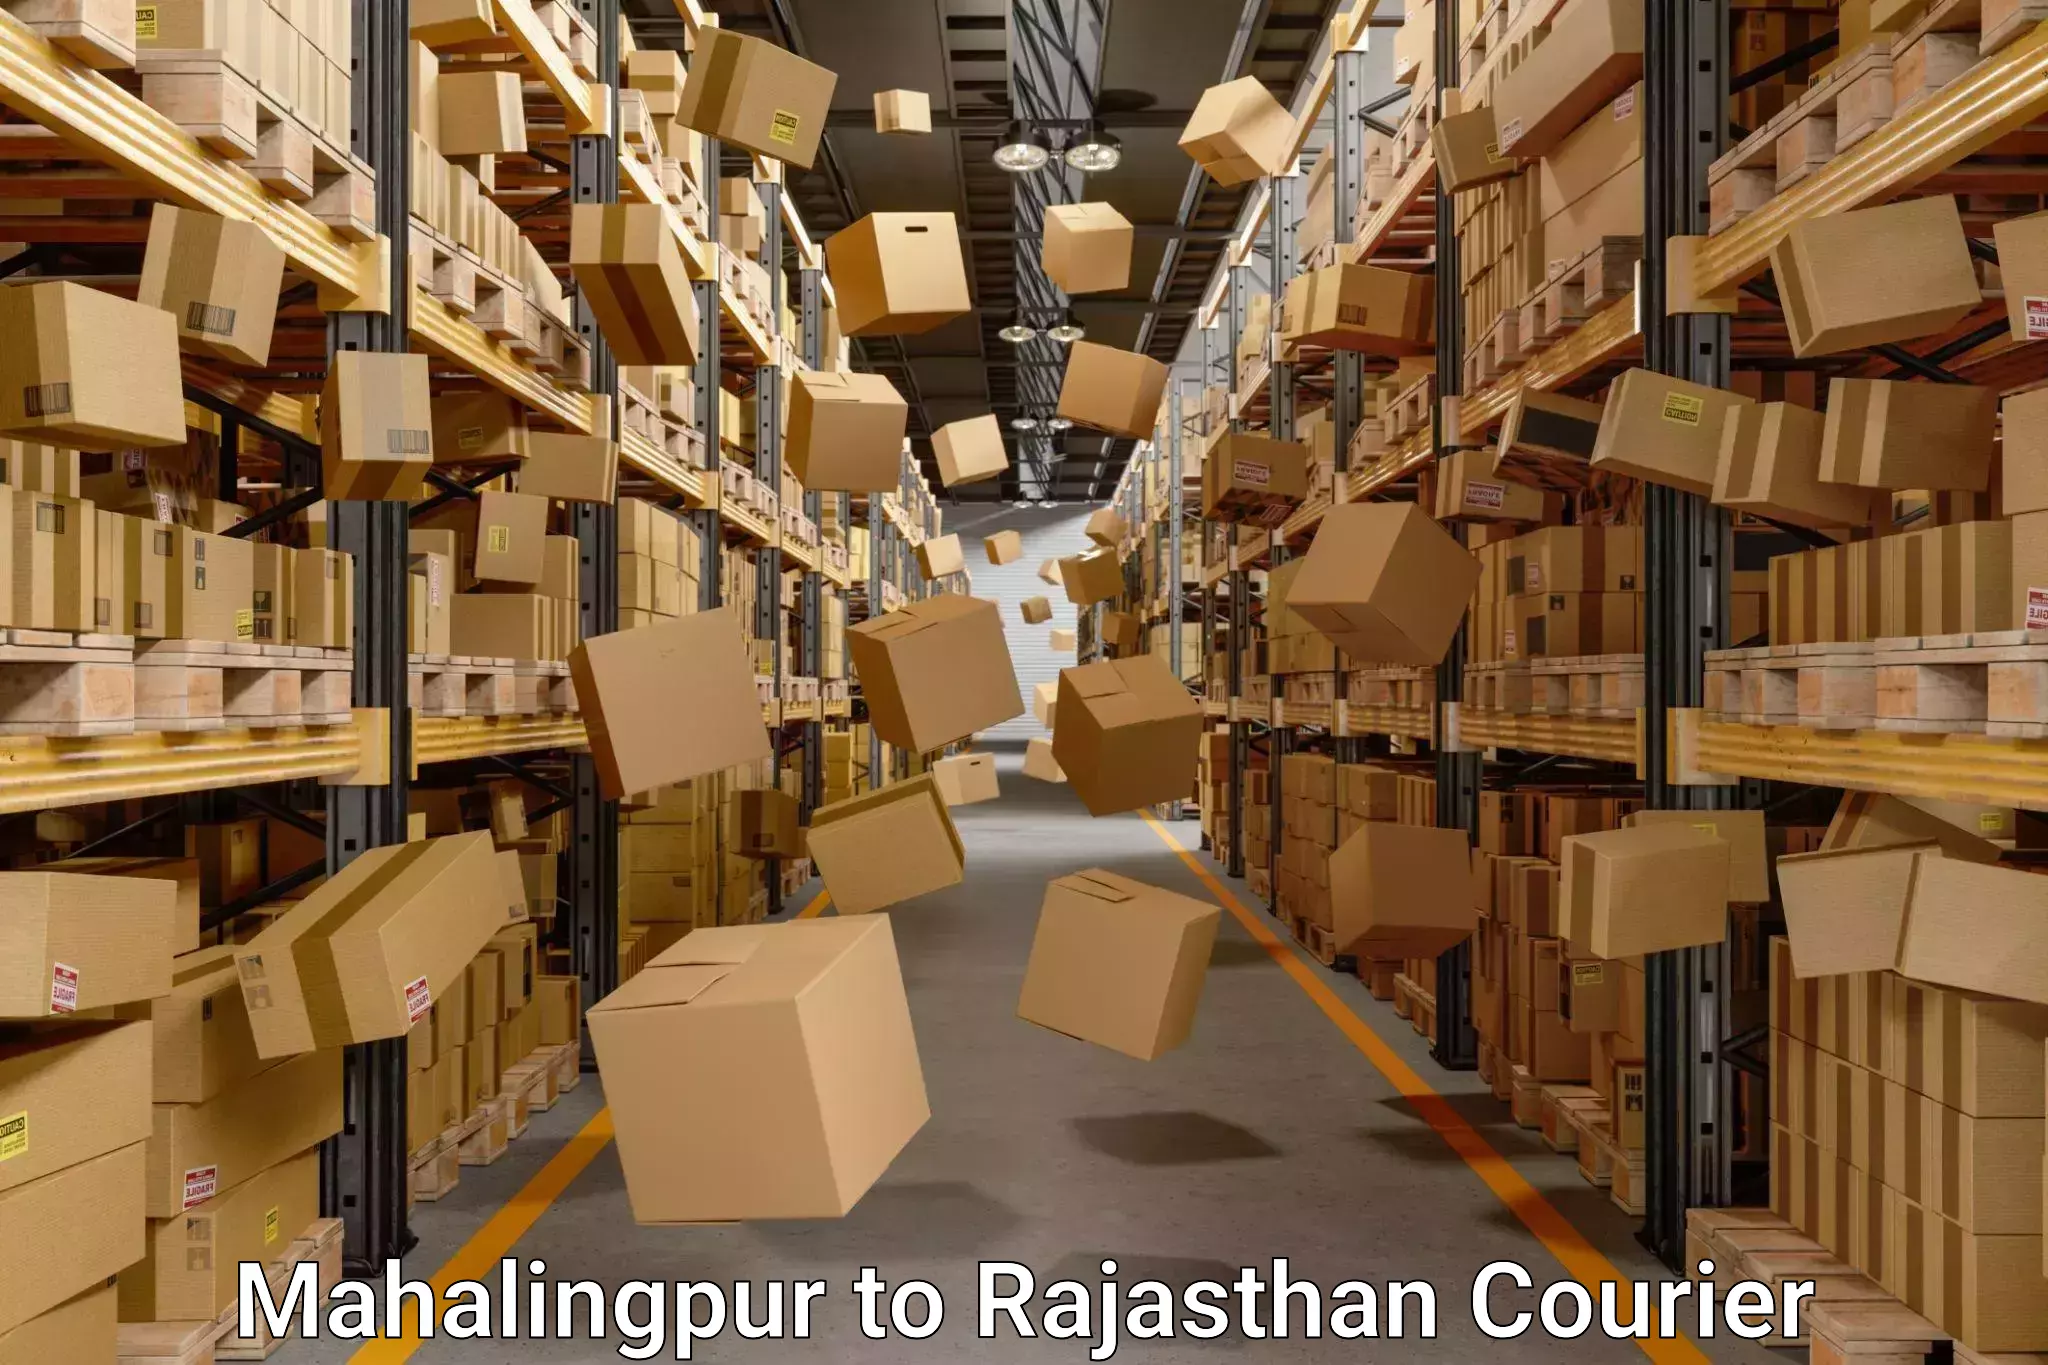 Moving and handling services Mahalingpur to Rajasthan